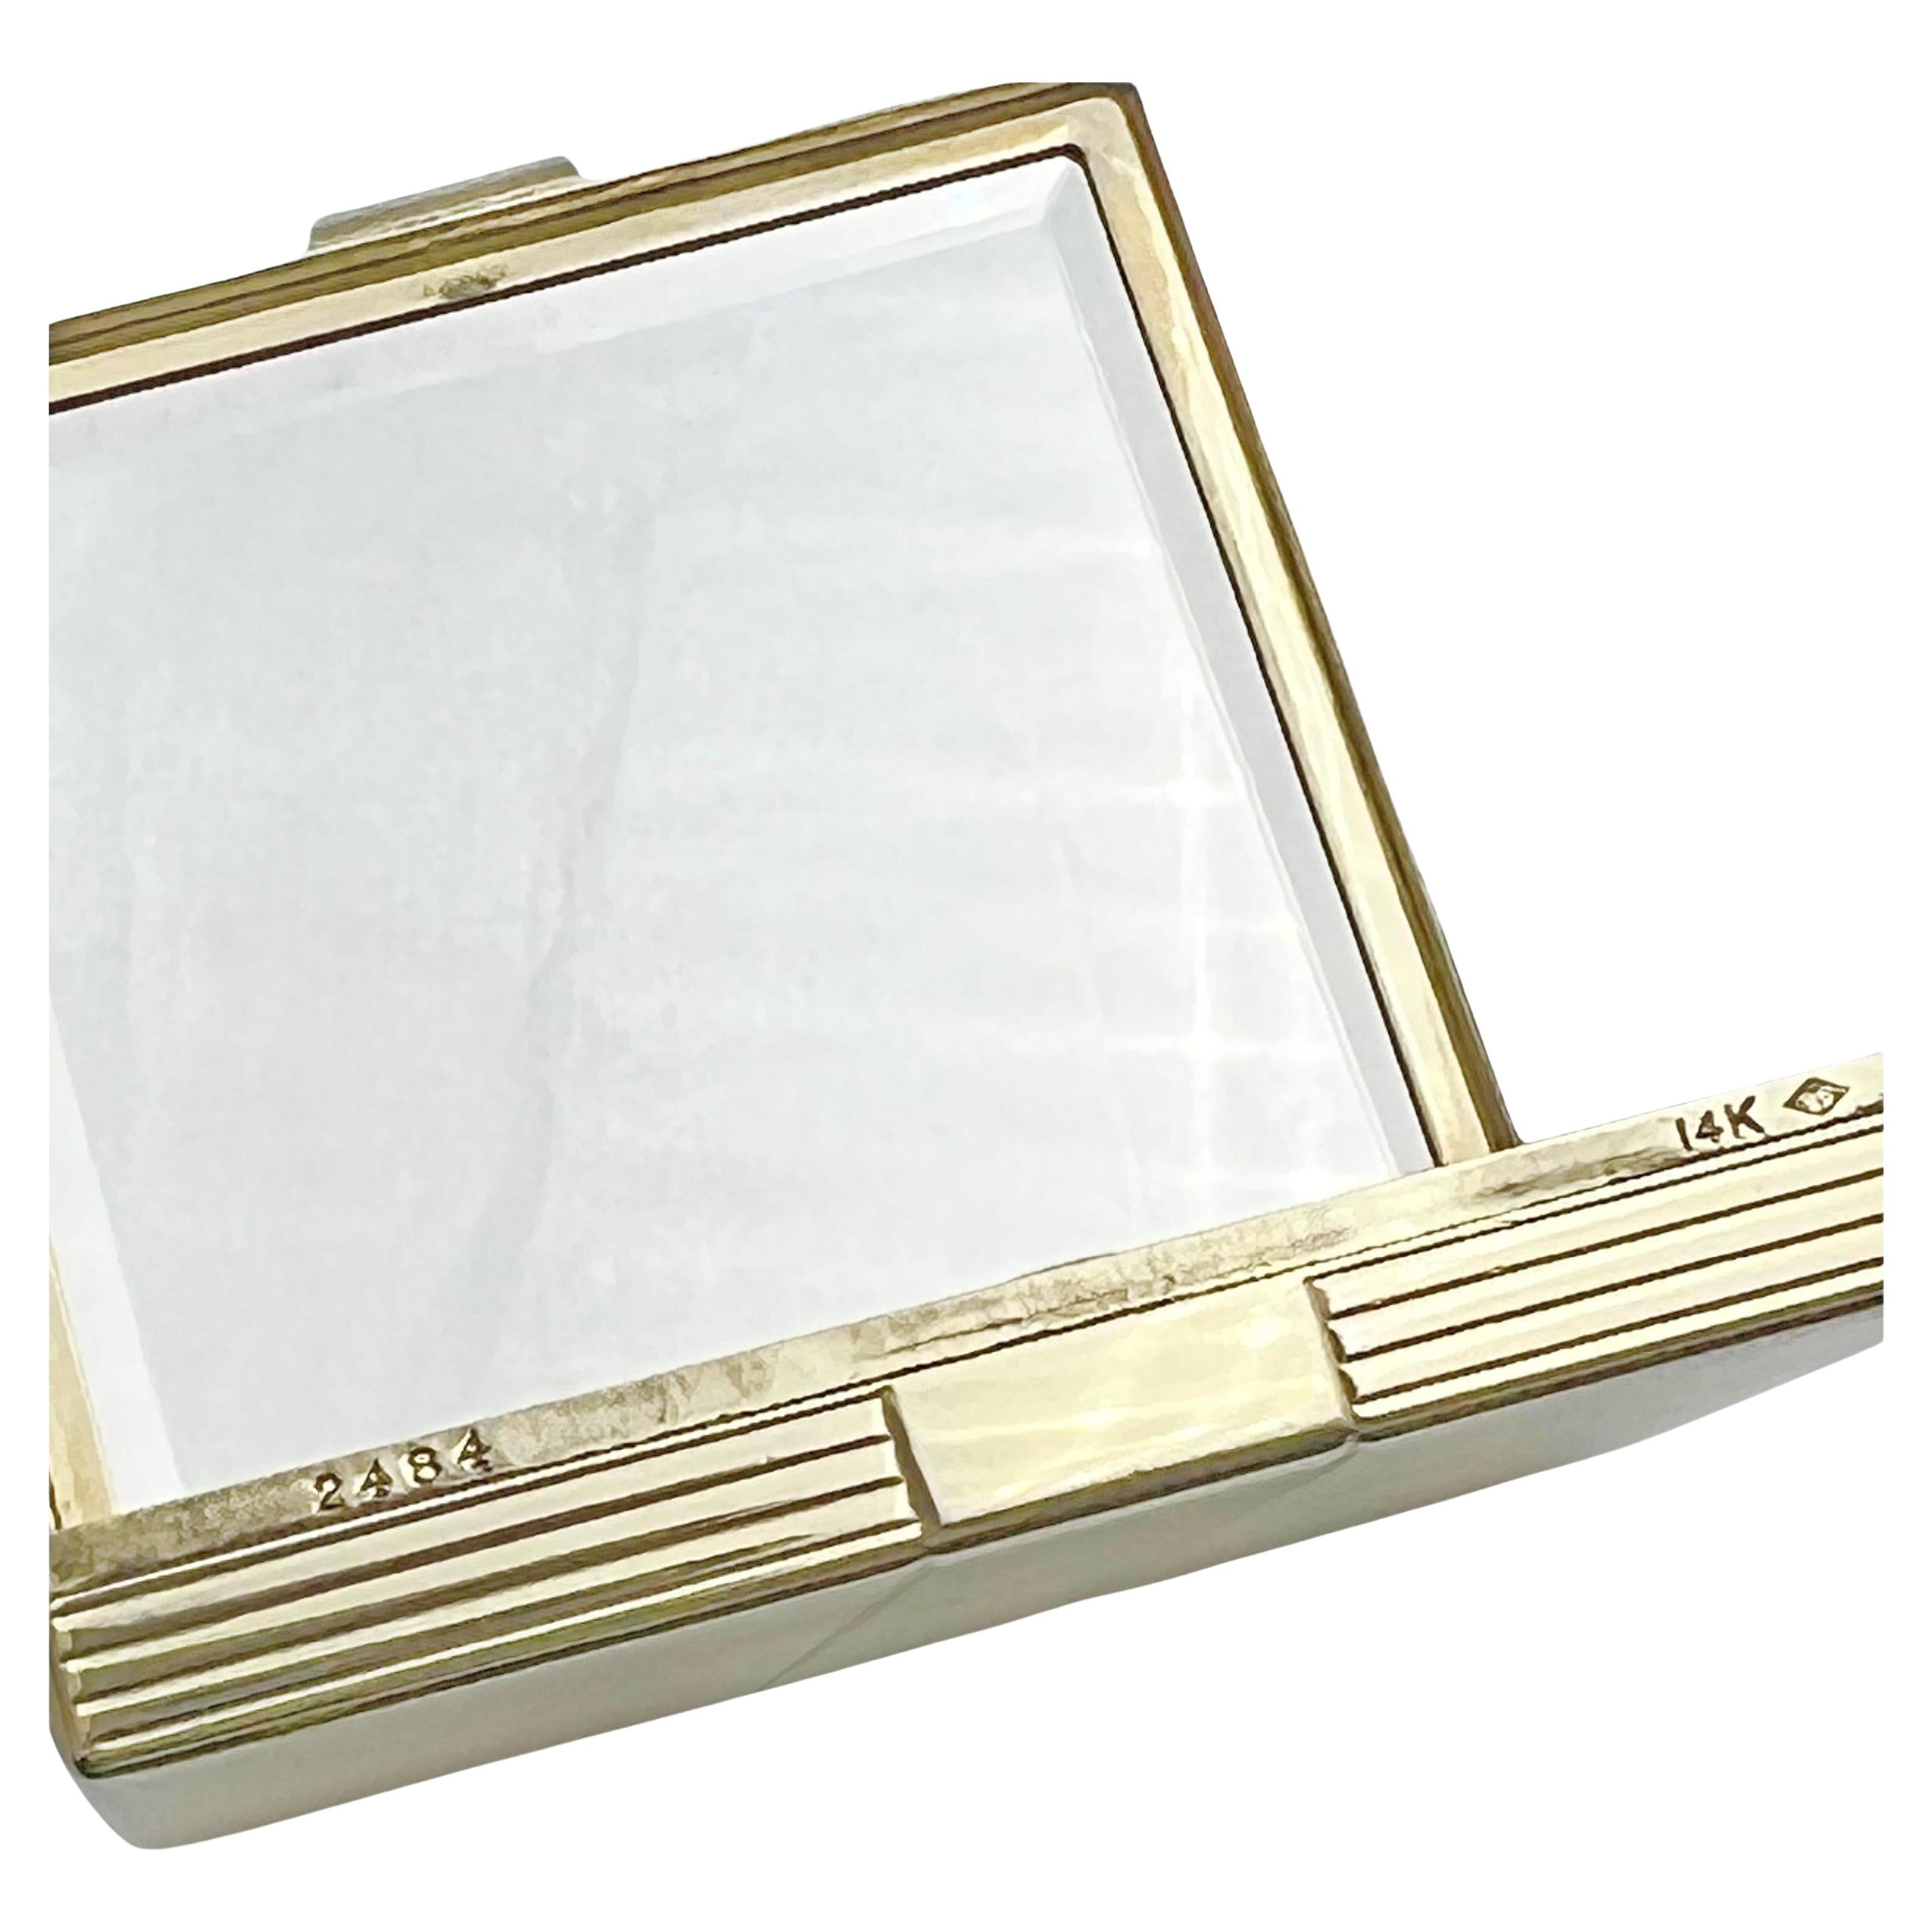 Cartier Art Deco Platin Saphir Diamant Kompakt (Carréeschliff)